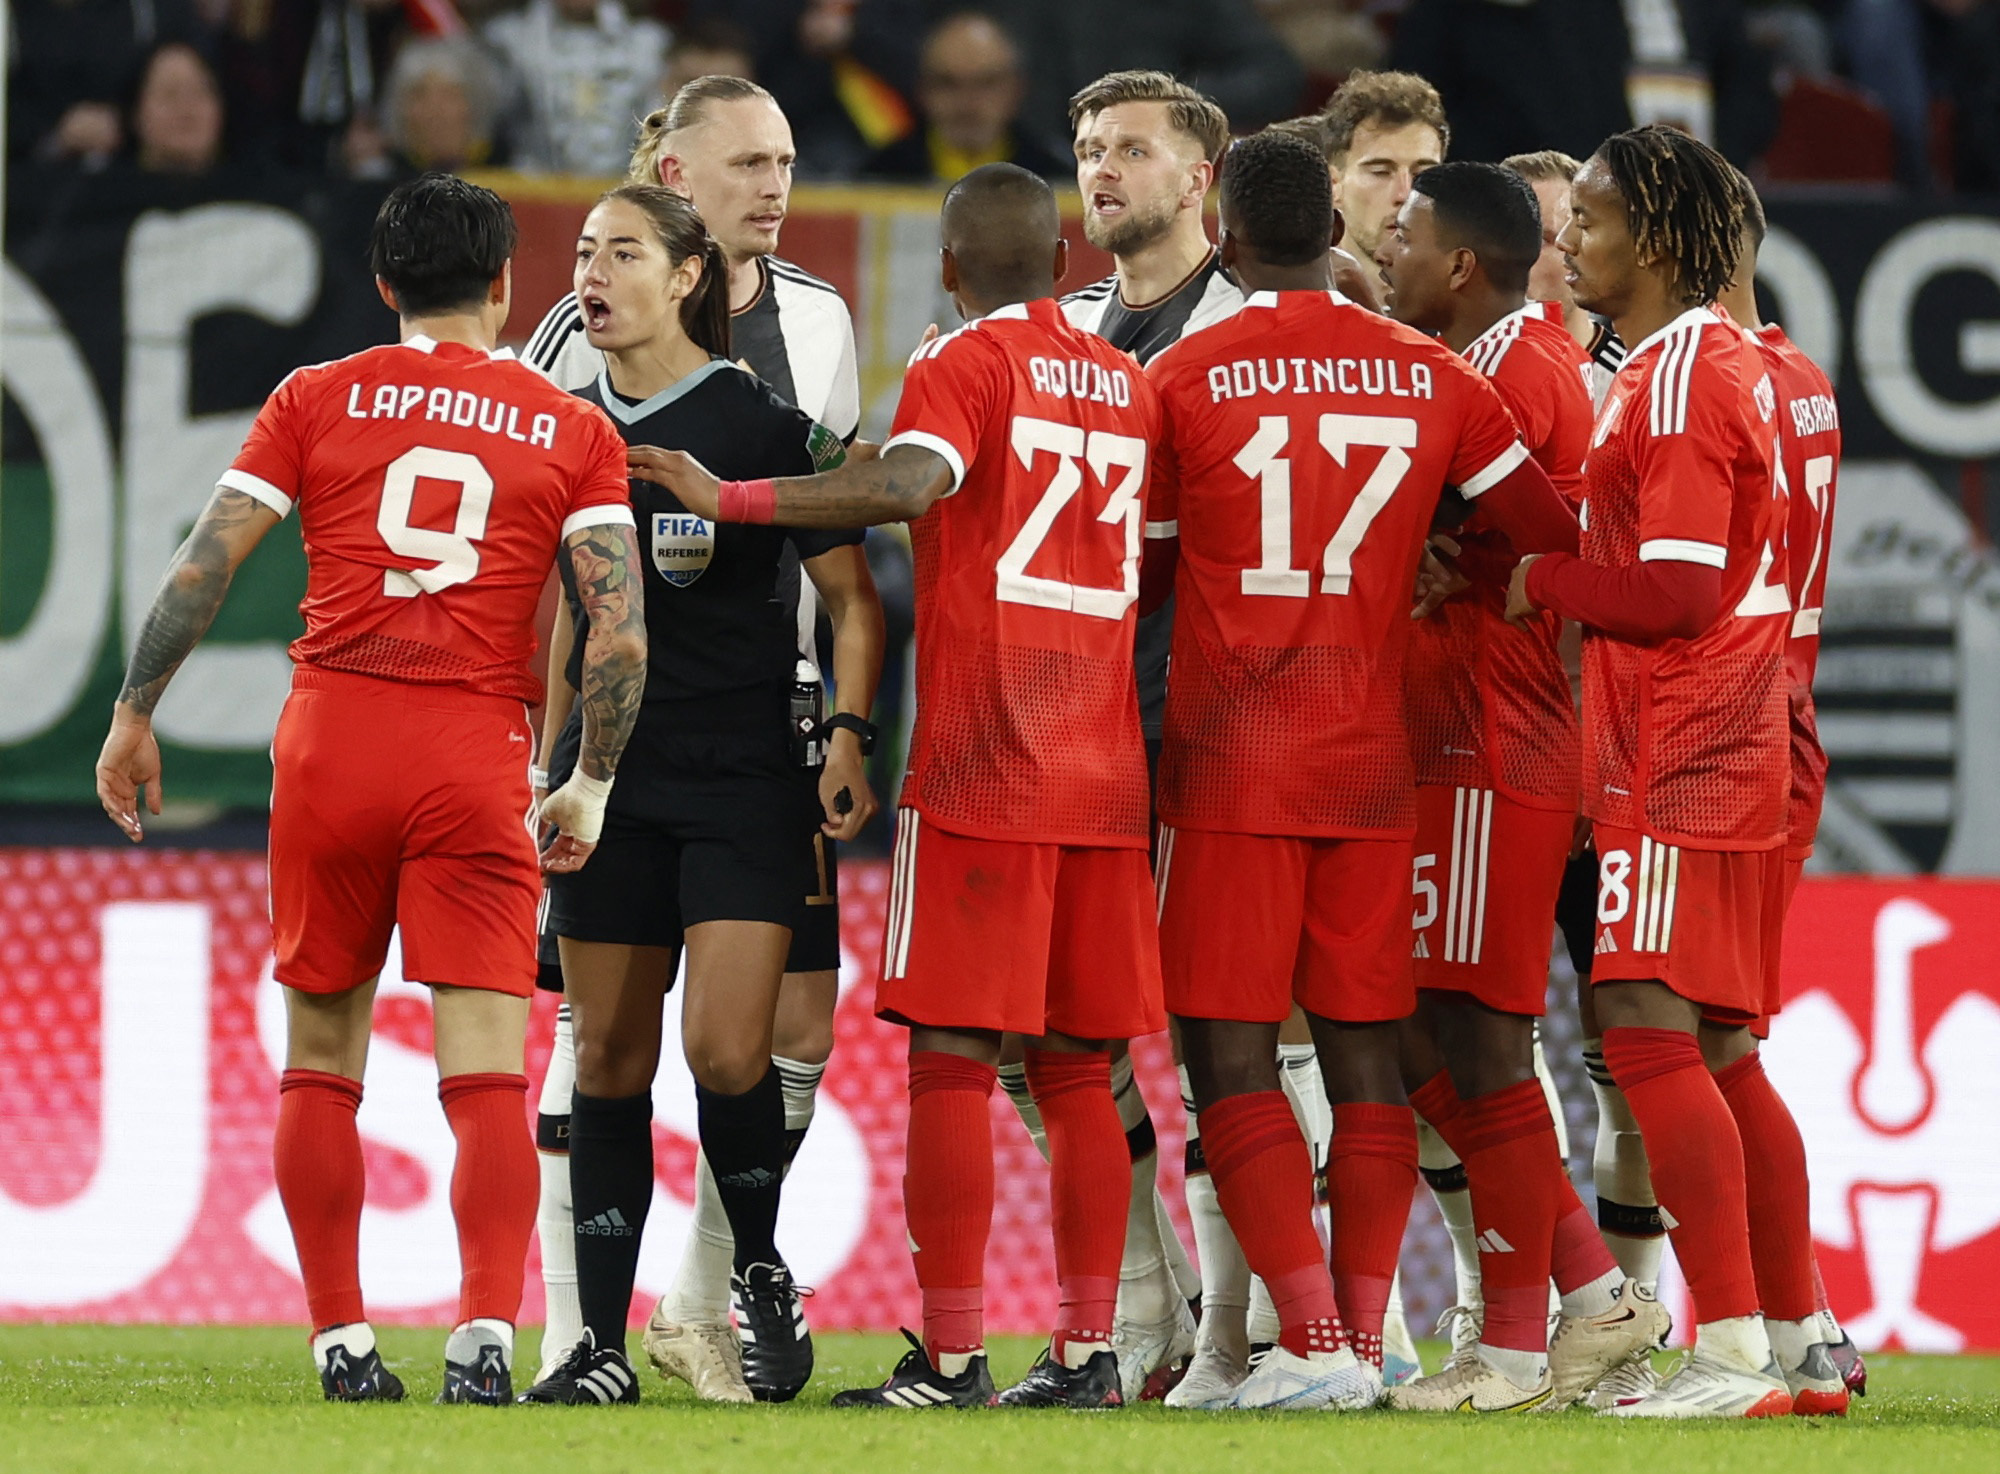 “Fueron superiores casi todo el partido”: Lapadula tras derrota ante Alemania